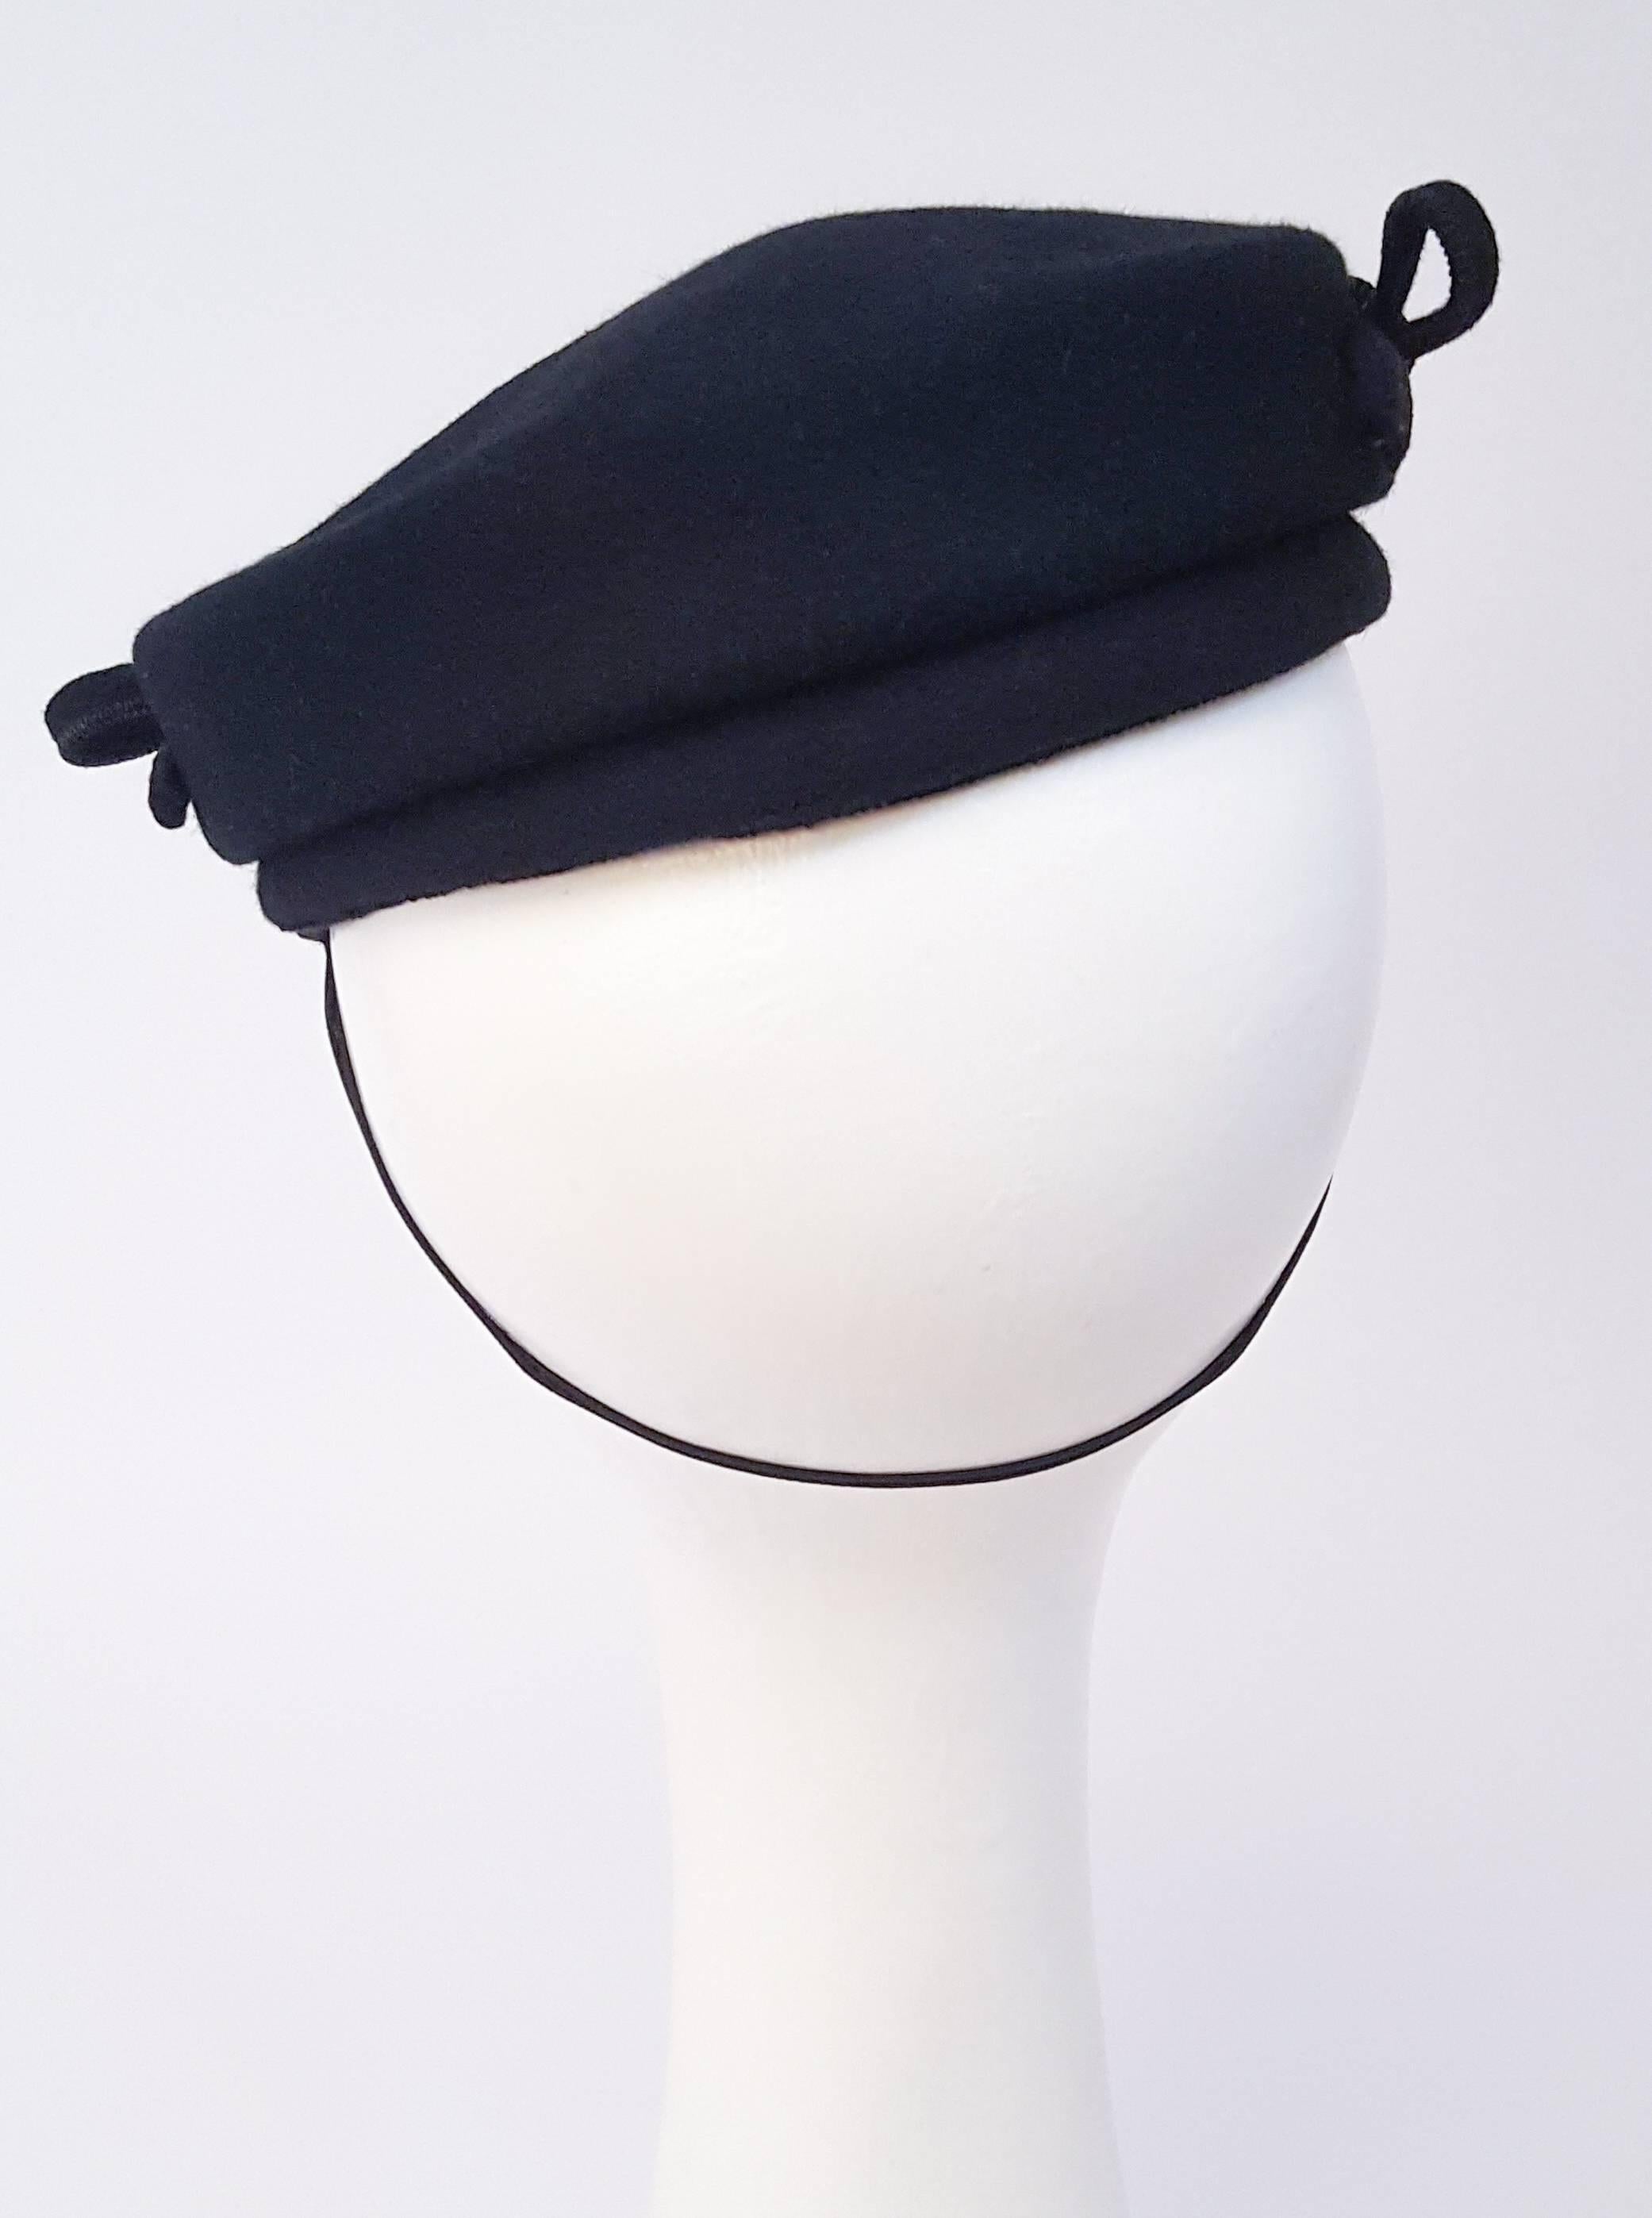 Women's 1940s Black Fashion Hat w/ Bows